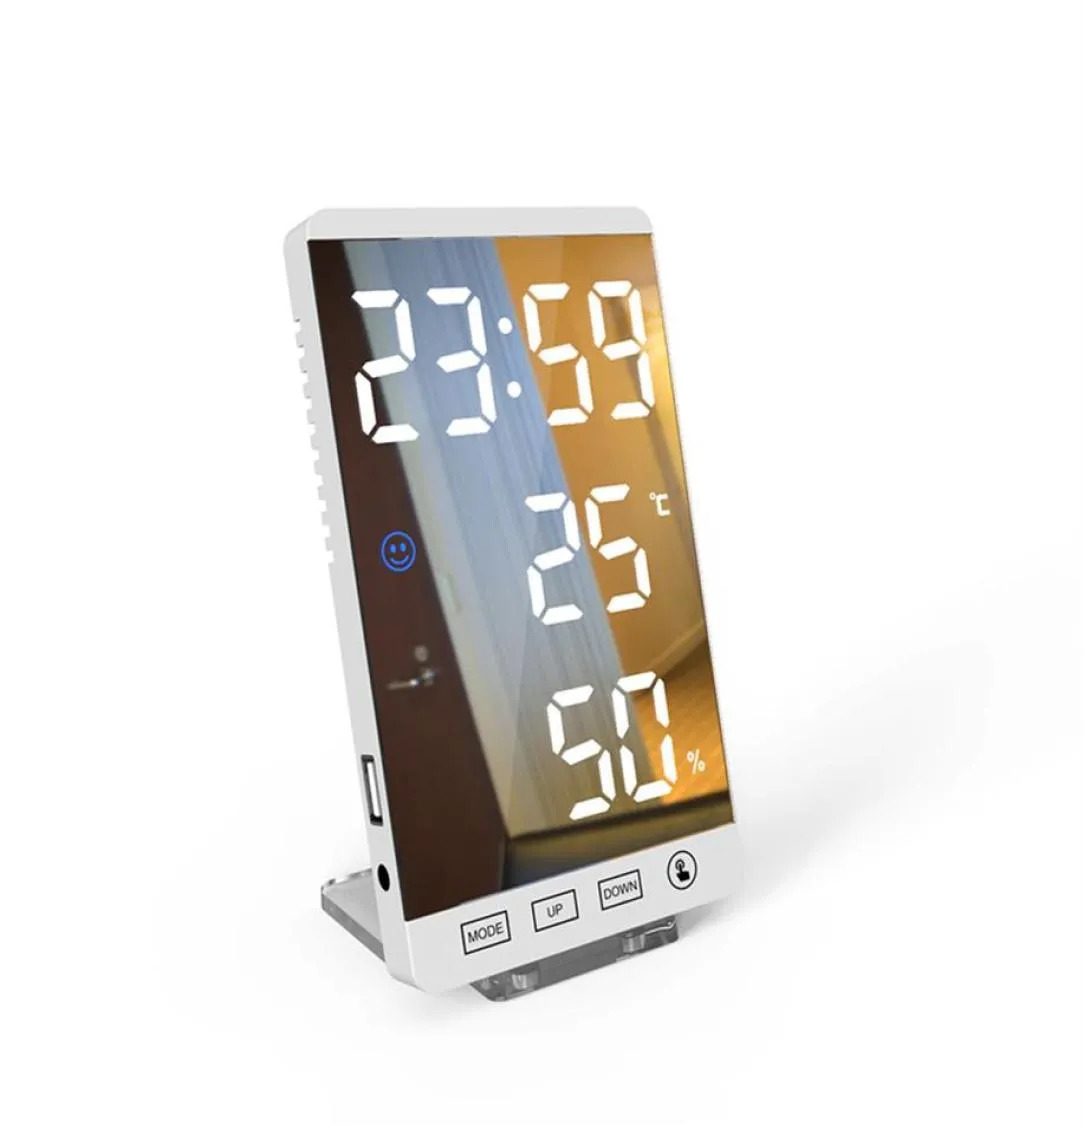 6 pouces LED miroir réveil bouton tactile mur horloge numérique temps température humidité affichage USB sortie Port Table horloge21649275626